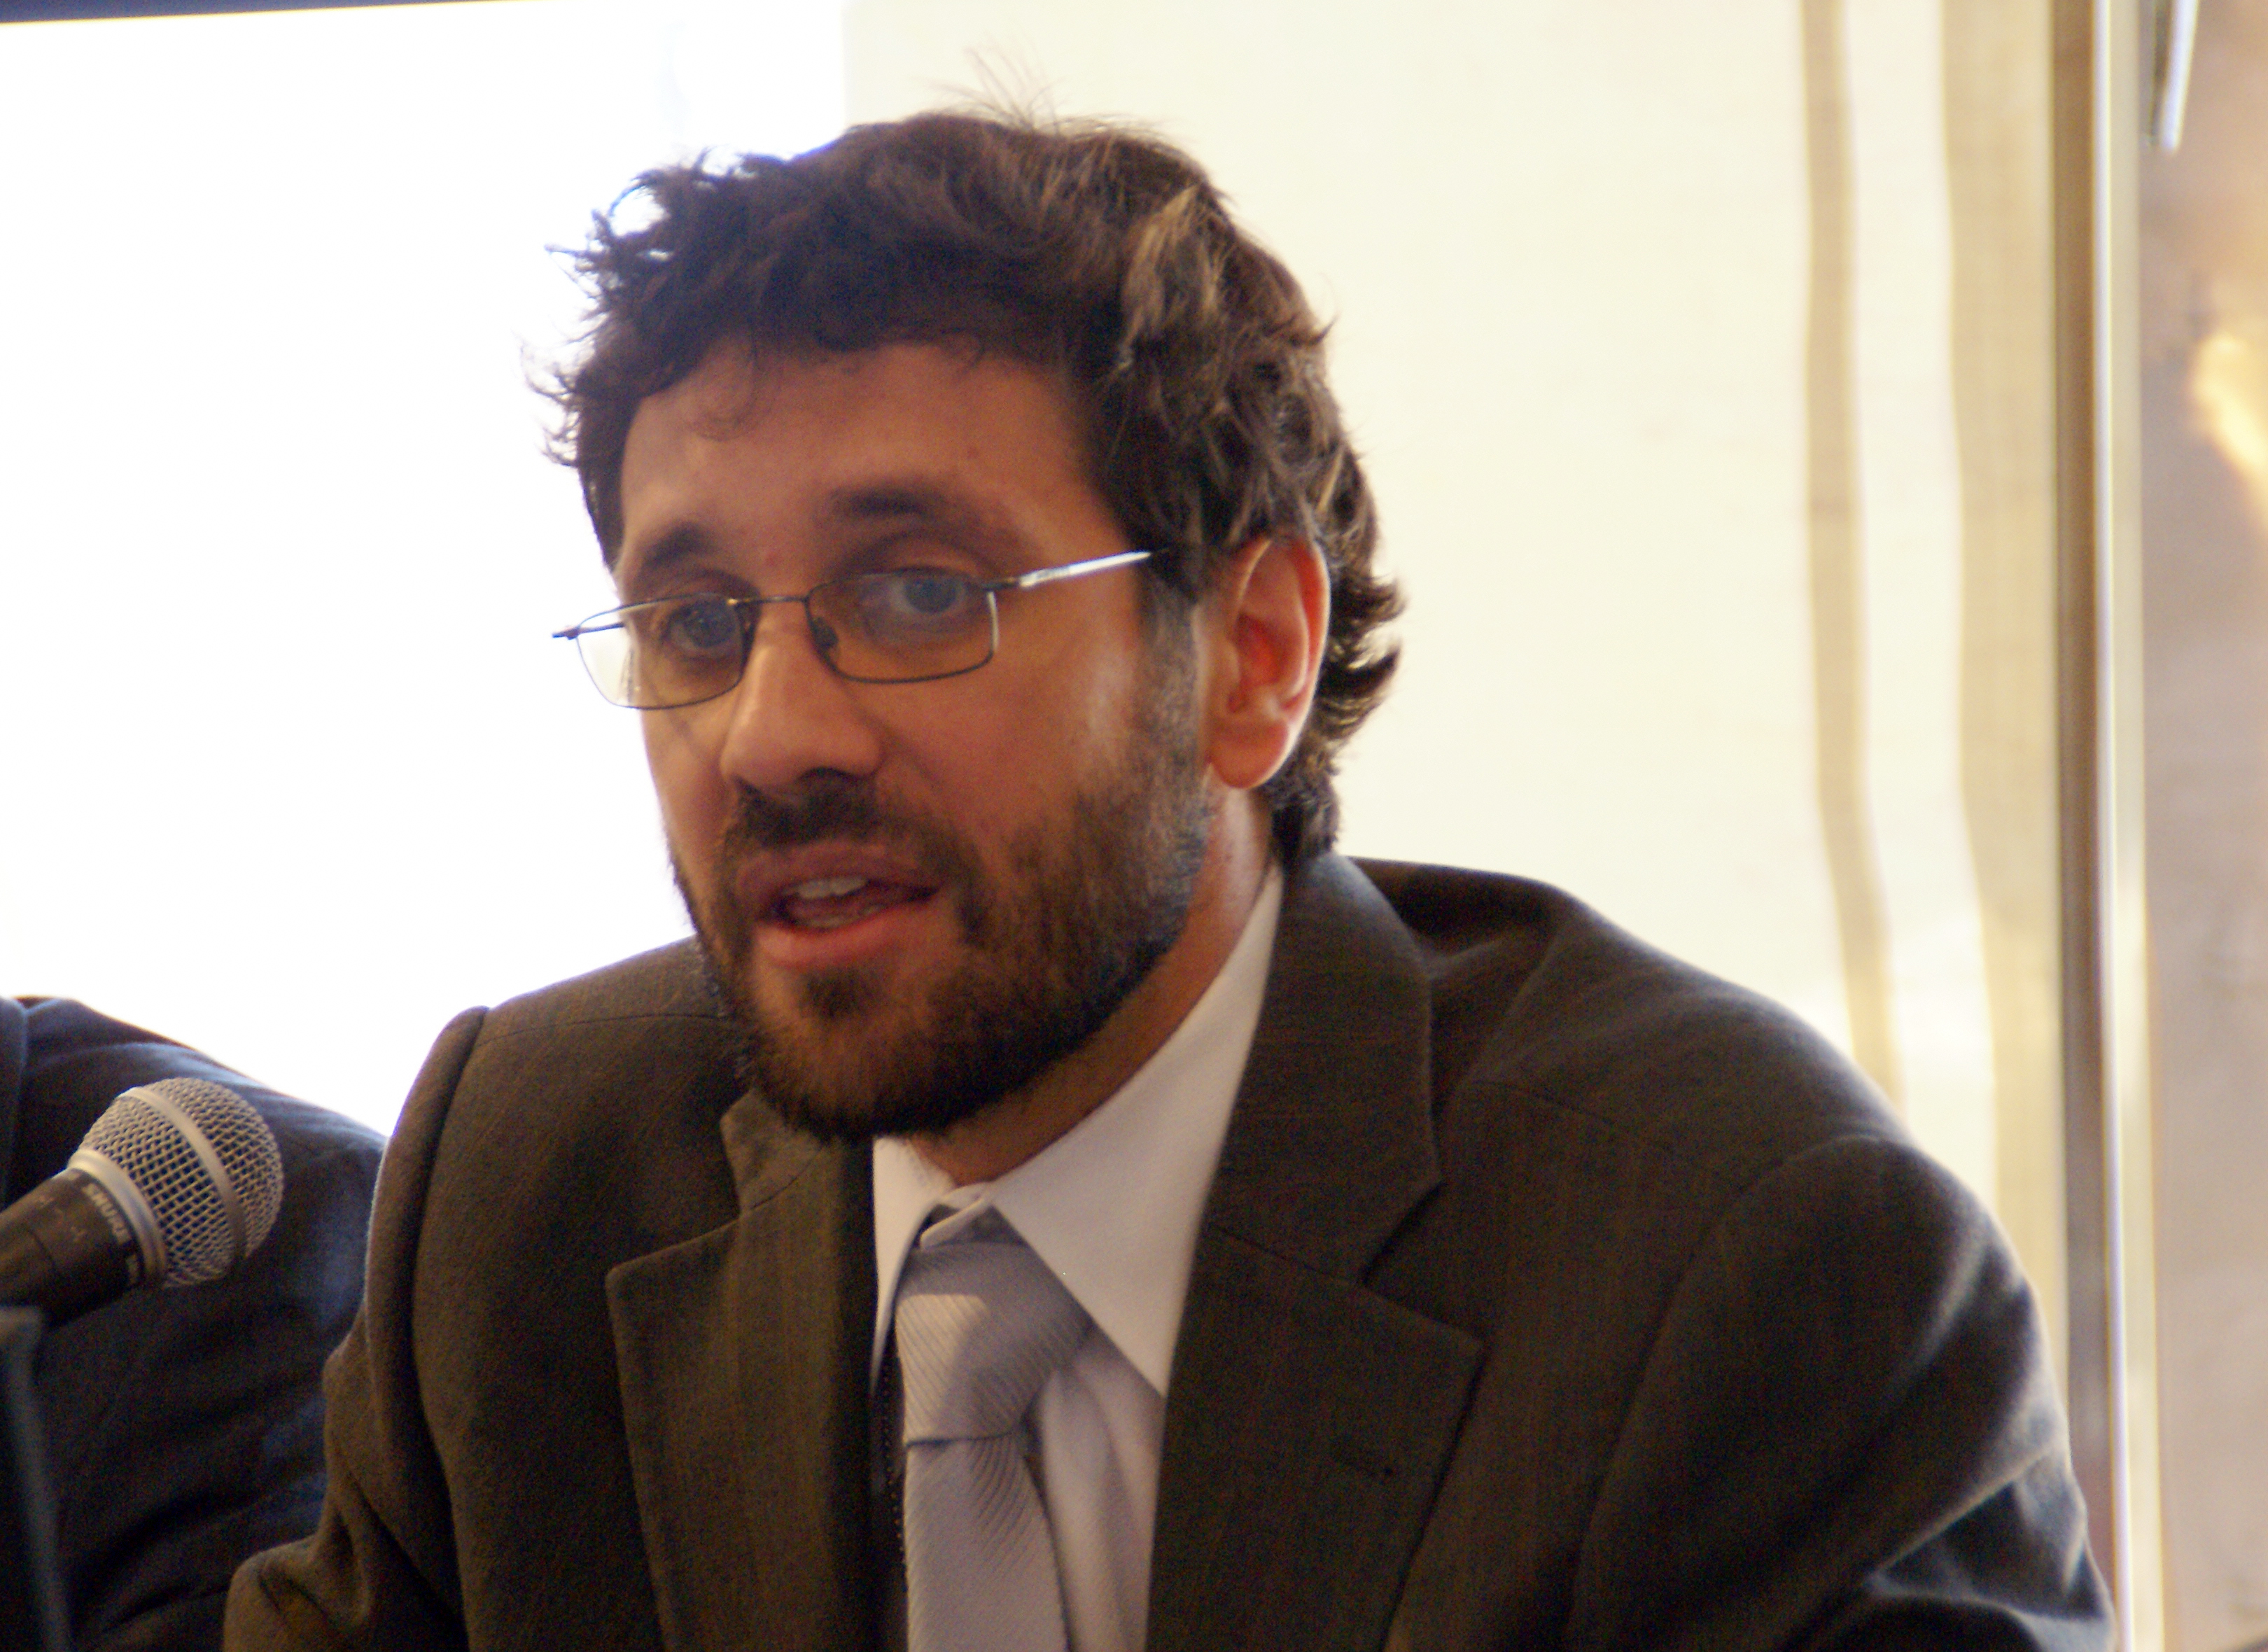 Dr. Gonzalo Pizarro